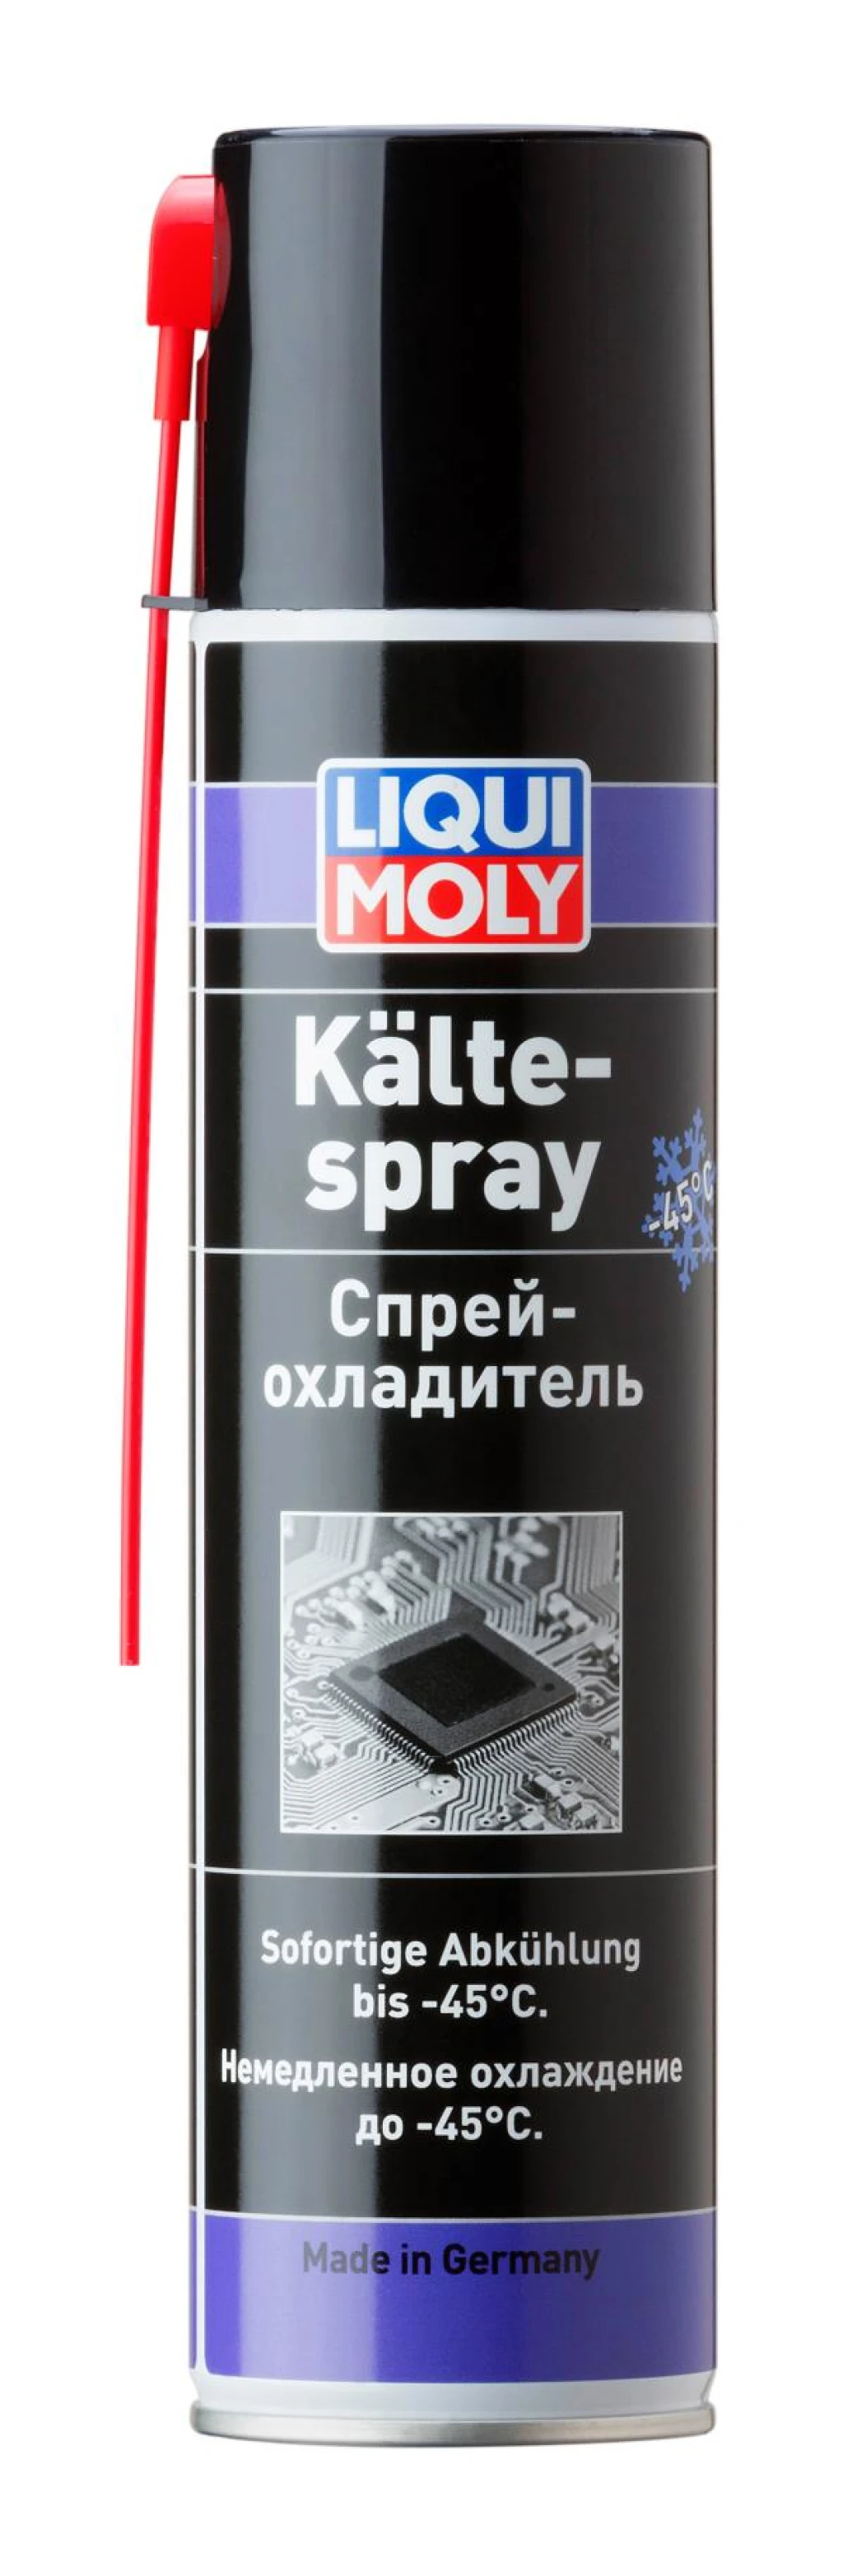 Спрей-охладитель Liqui Moly Kalte-Spray аэрозоль 400 мл